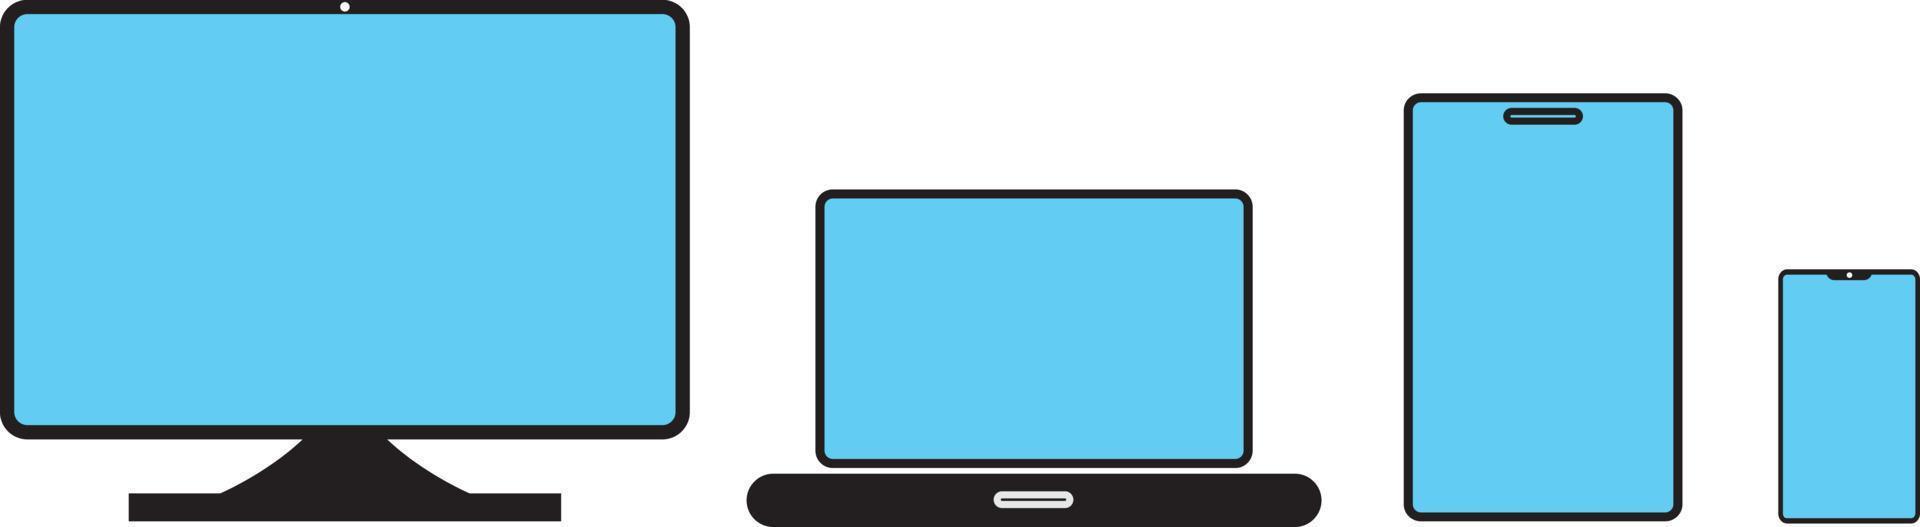 ensemble de maquettes d'ordinateurs de bureau, d'ordinateurs portables, de tablettes et de smartphones de style réaliste ensemble d'icônes d'appareils de maquette pour les applications d'interface utilisateur et la conception Web réactive avec un écran bleu. vecteur